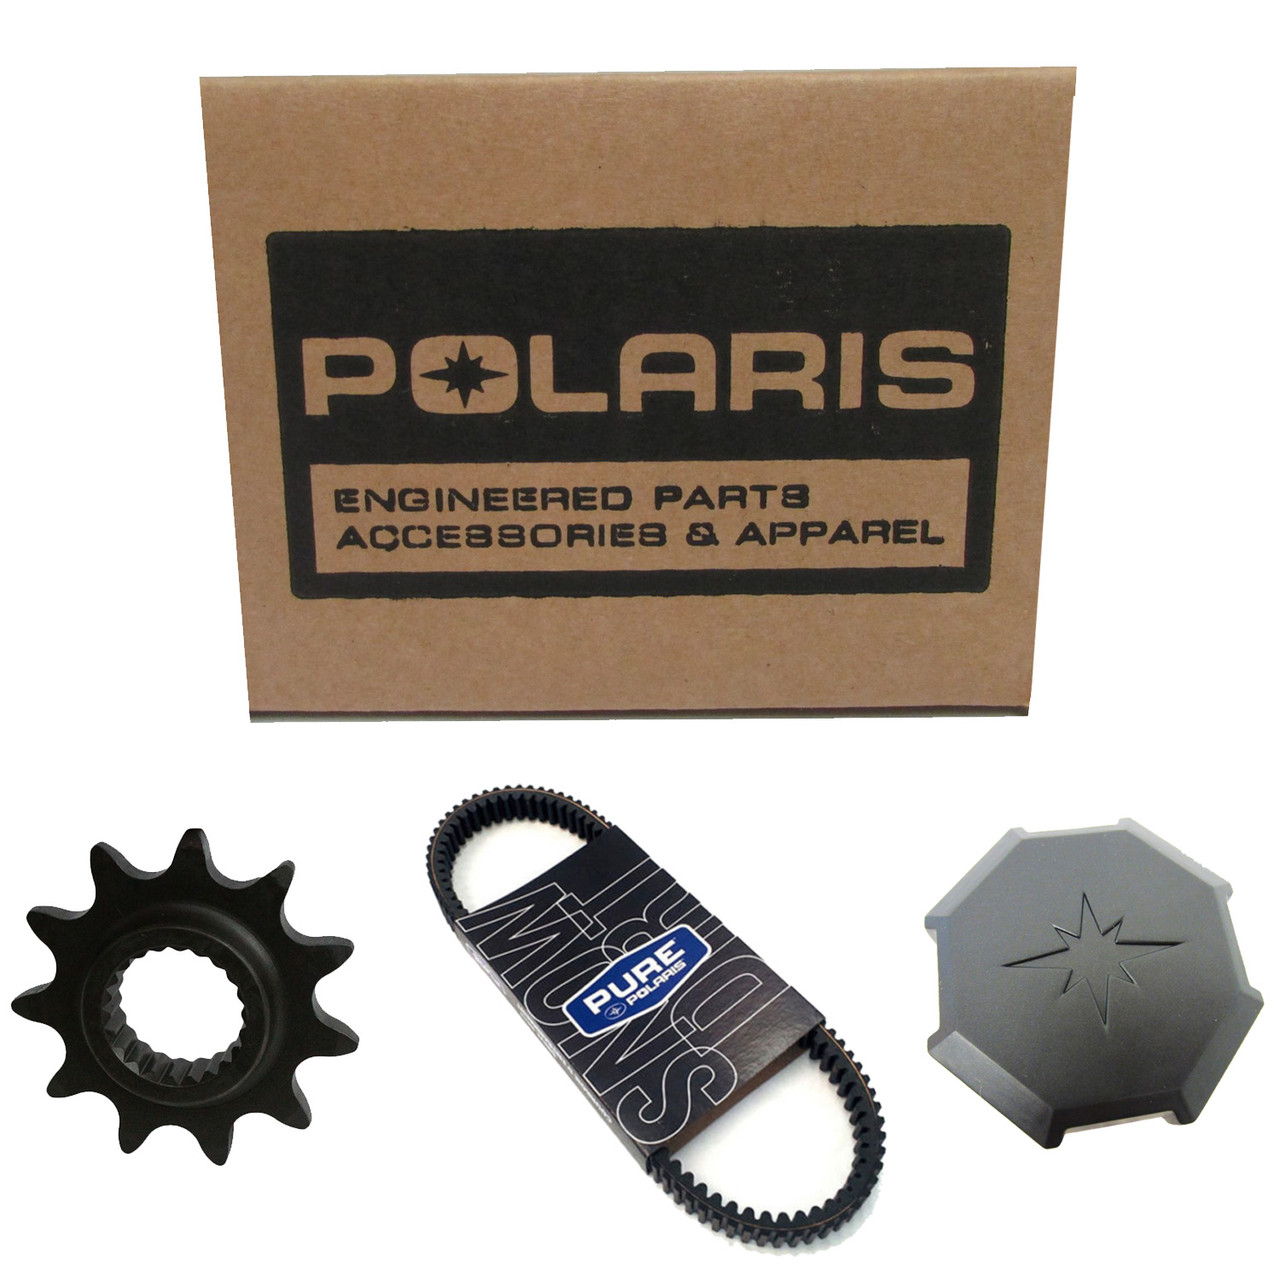 Polaris New OEM Steering Post Weld, Black, 1824690-329